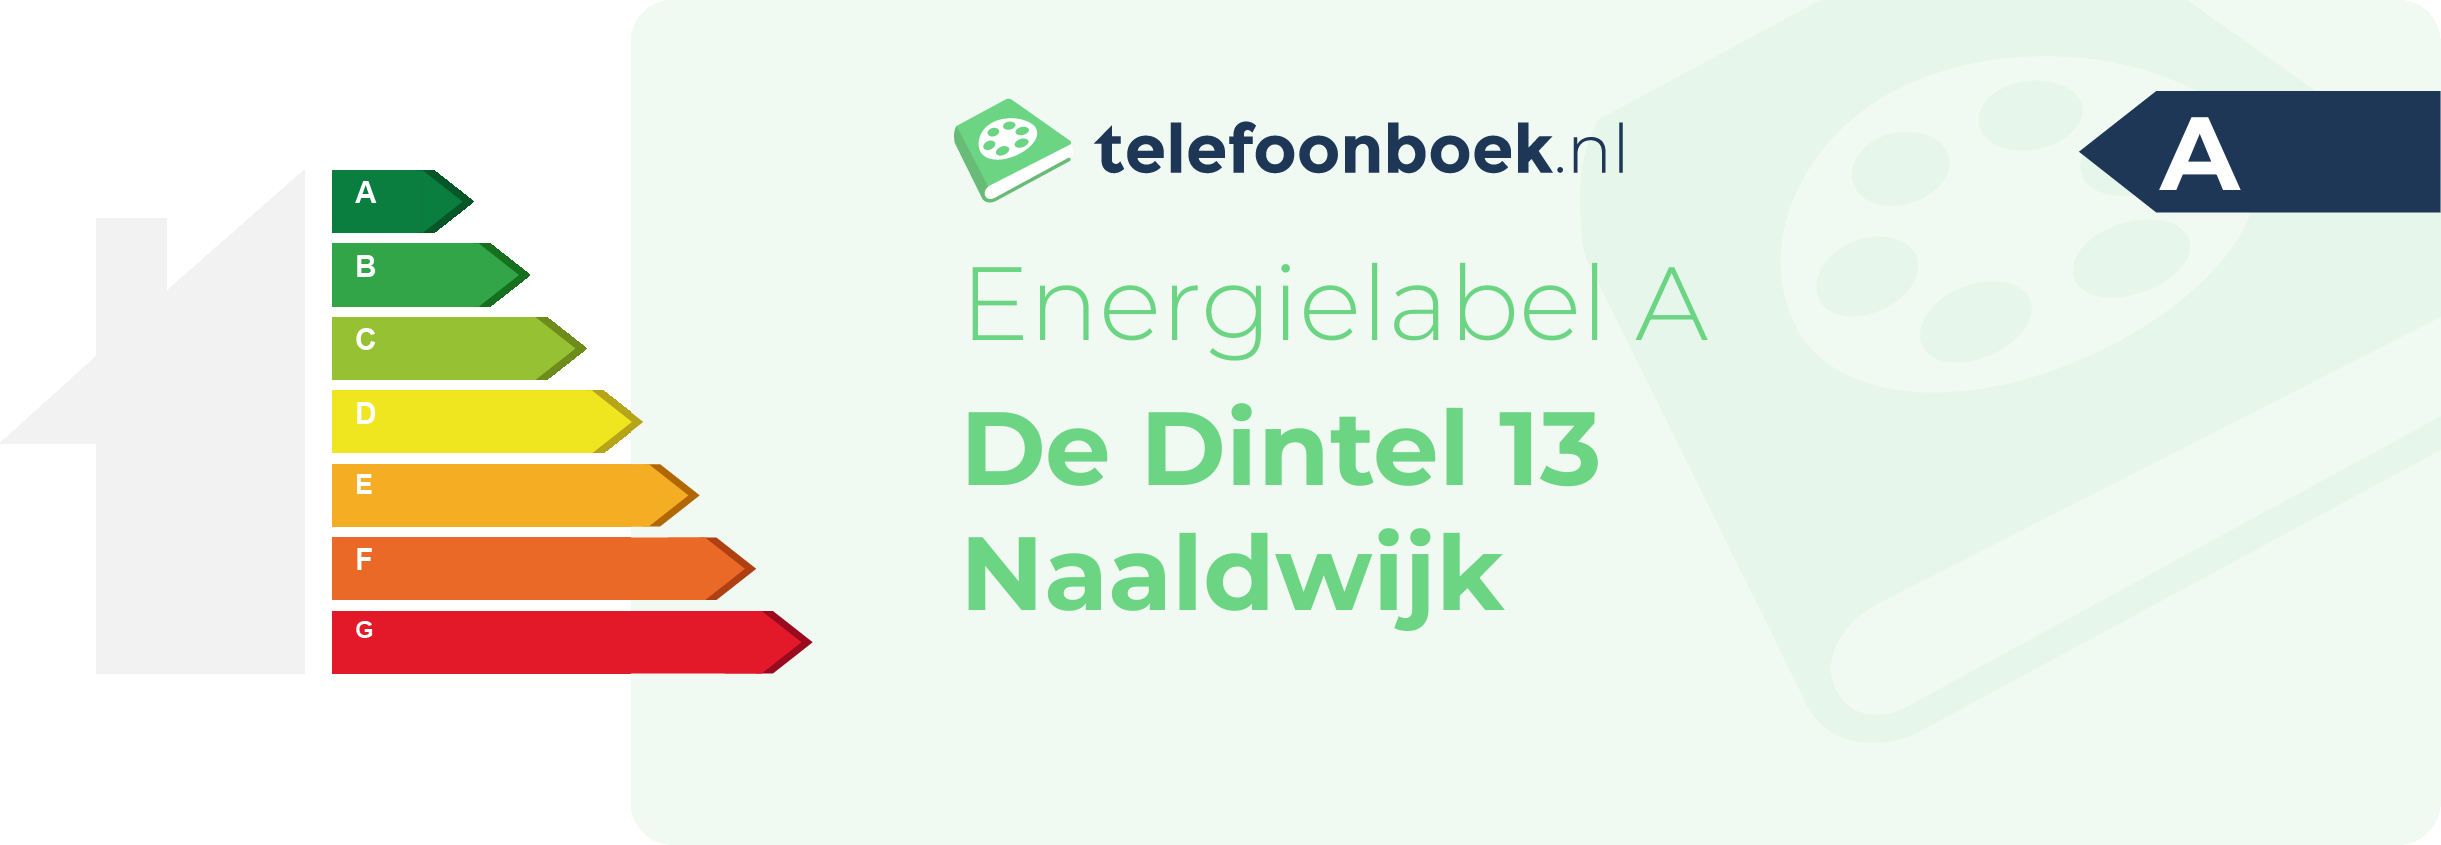 Energielabel De Dintel 13 Naaldwijk